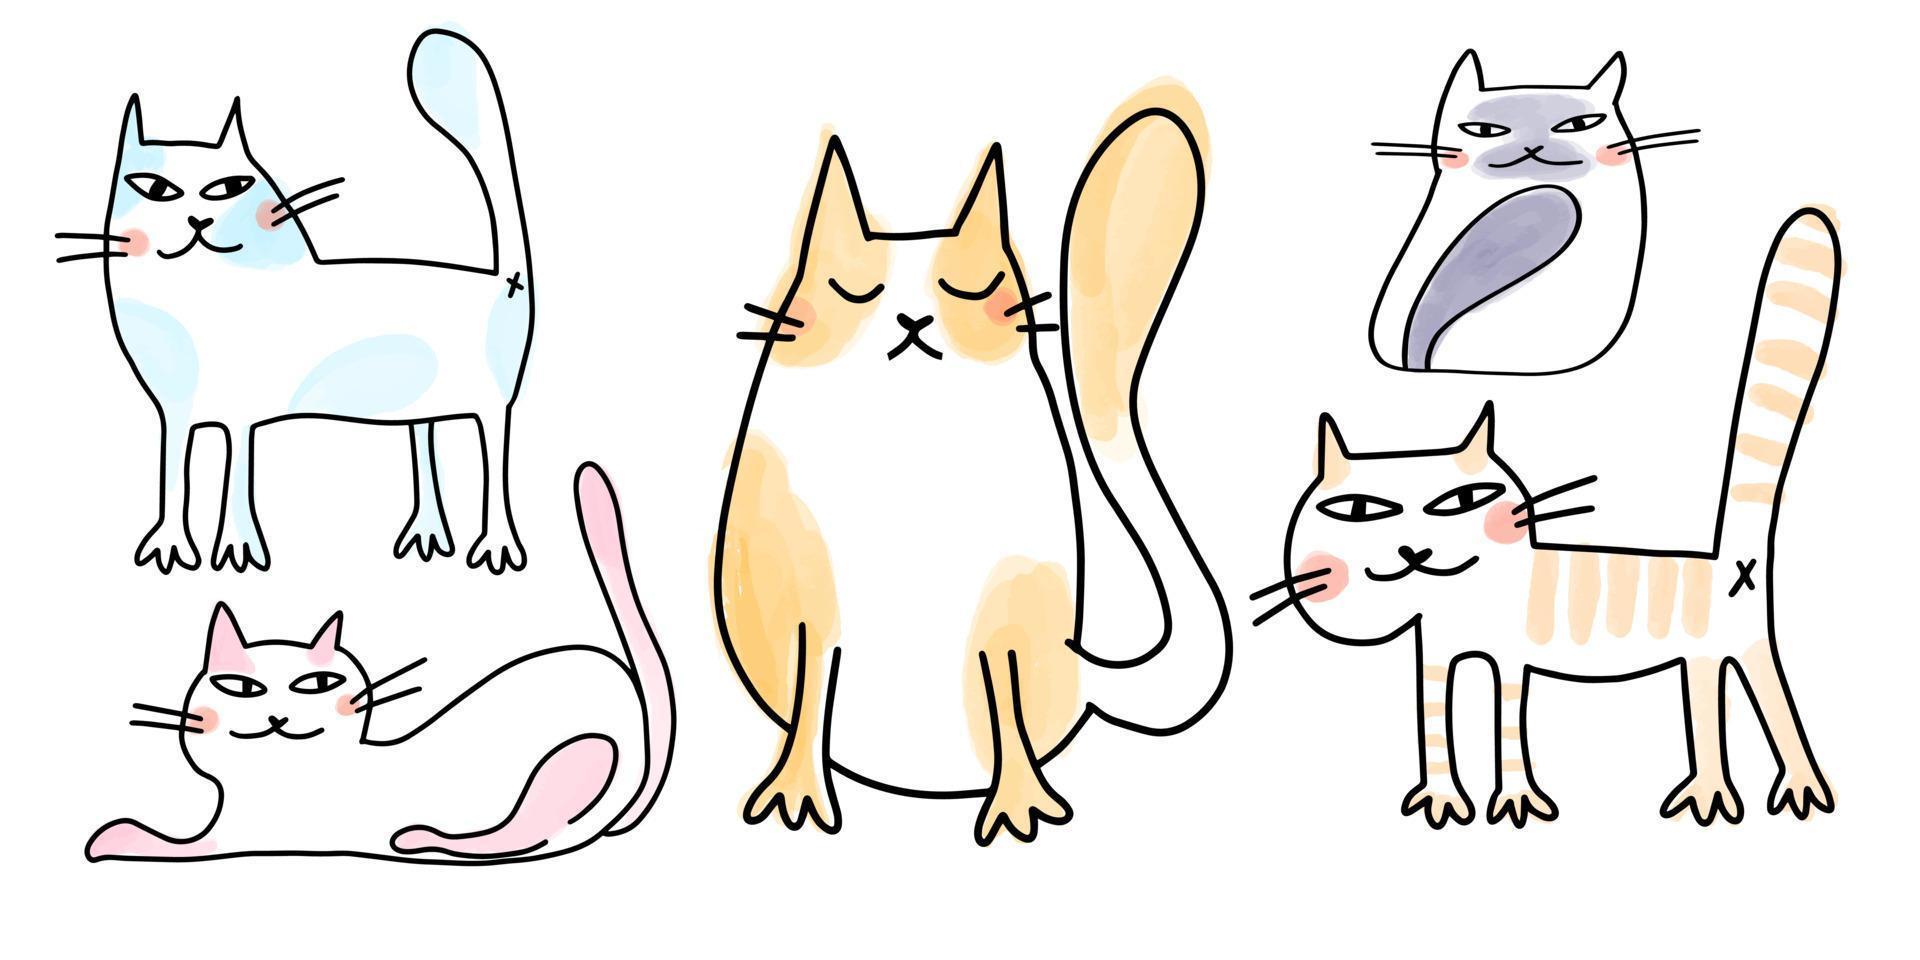 samling av roliga doodle katter med akvarell fläckar på bakgrunden i tecknad stil. vektor